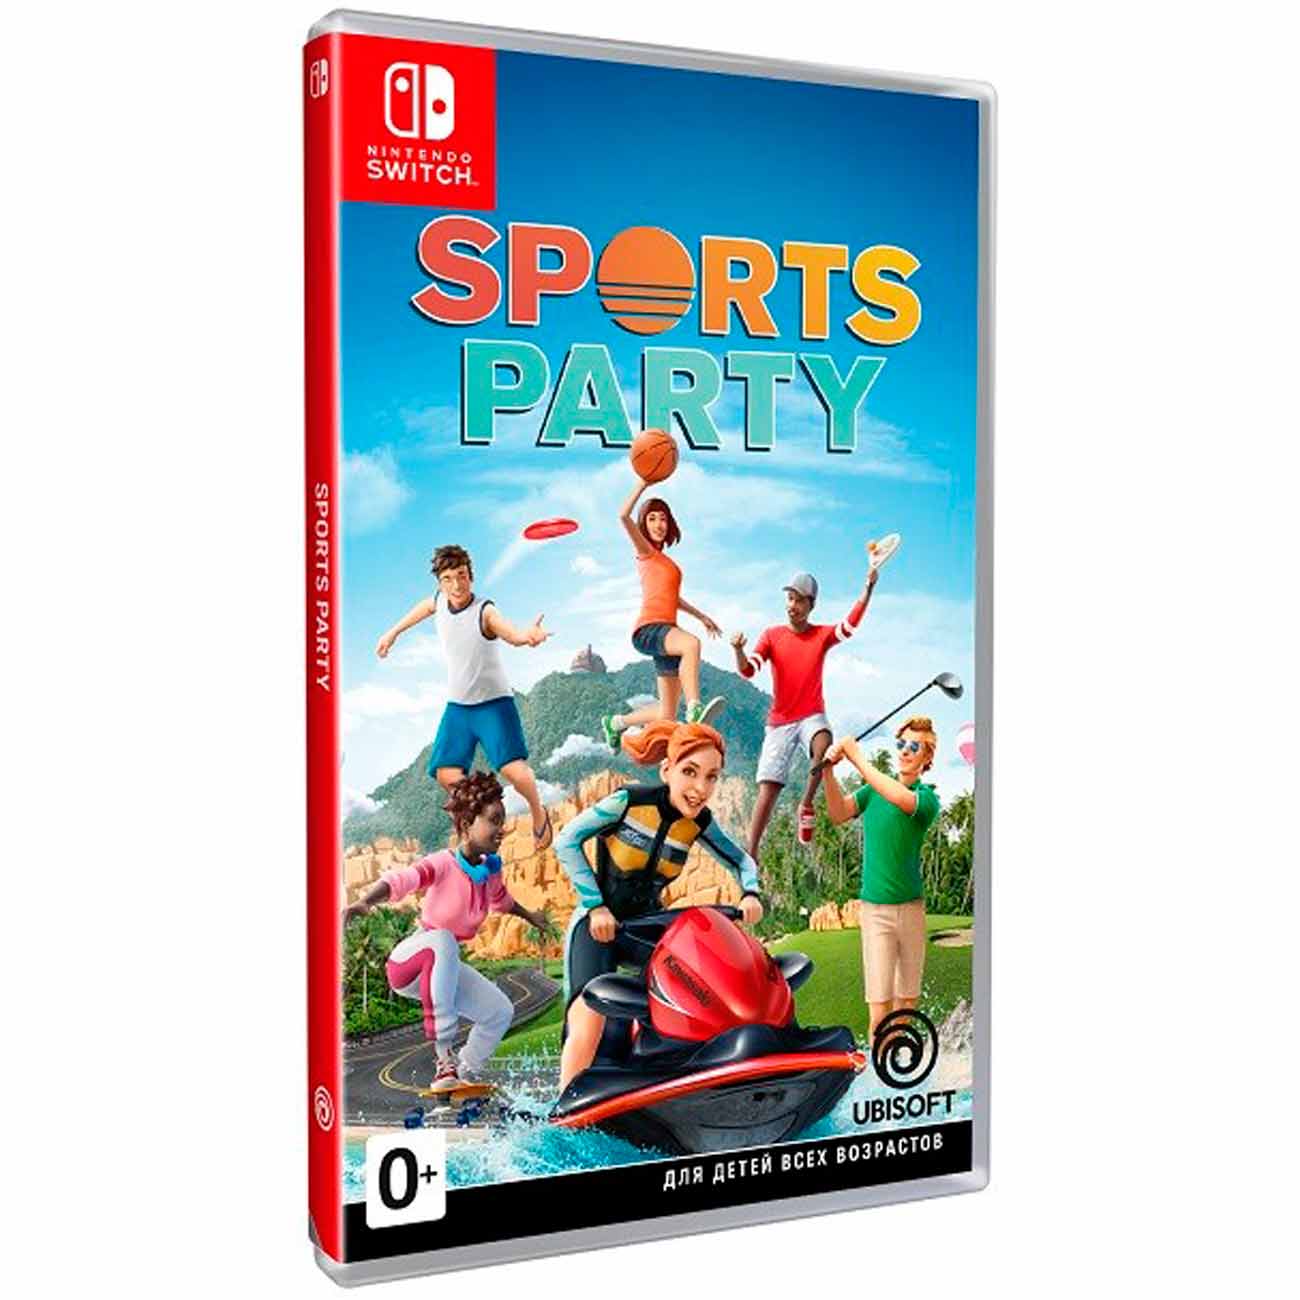 Играть игры switch. Игры на Нинтендо свитч. Nintendo Switch Sports. Игрушки Нинтендо свитч. Sports Party Nintendo Switch.